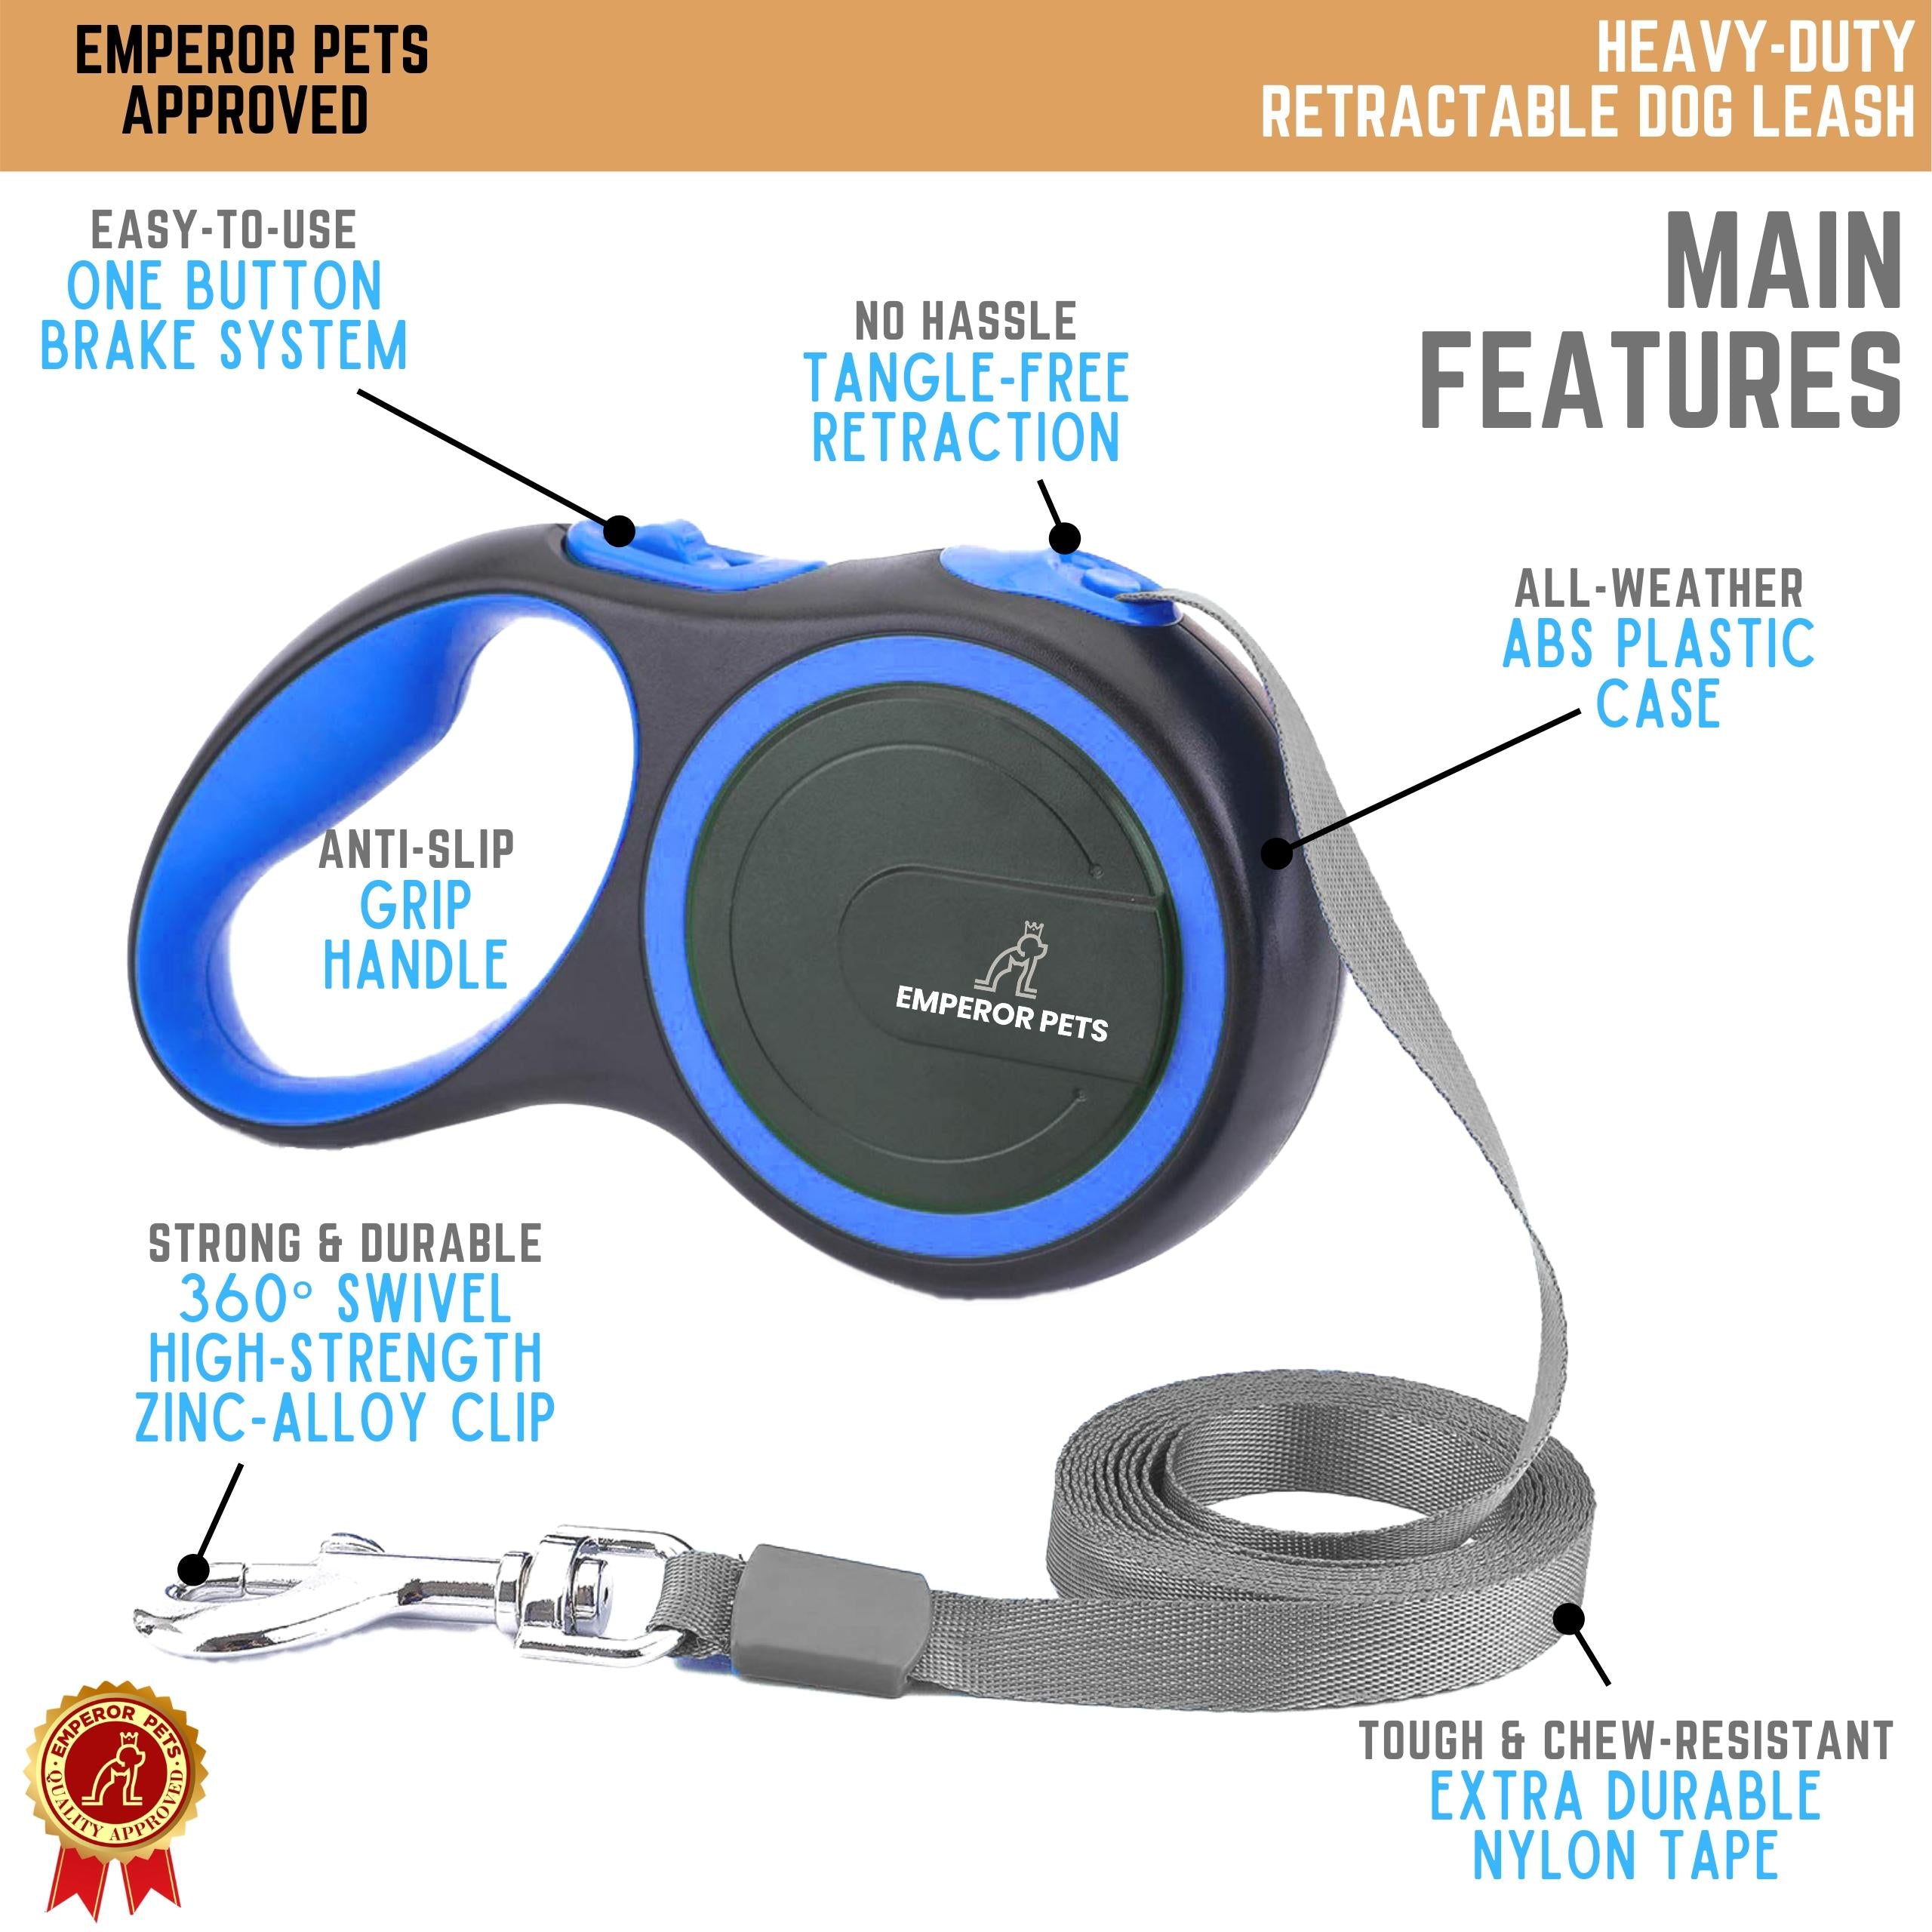 Emperor Pets Retractable Pet Leash Tape Length 26ft 8m Blue Color, Durable Retractable Dog Leash - Image 4 Main Features